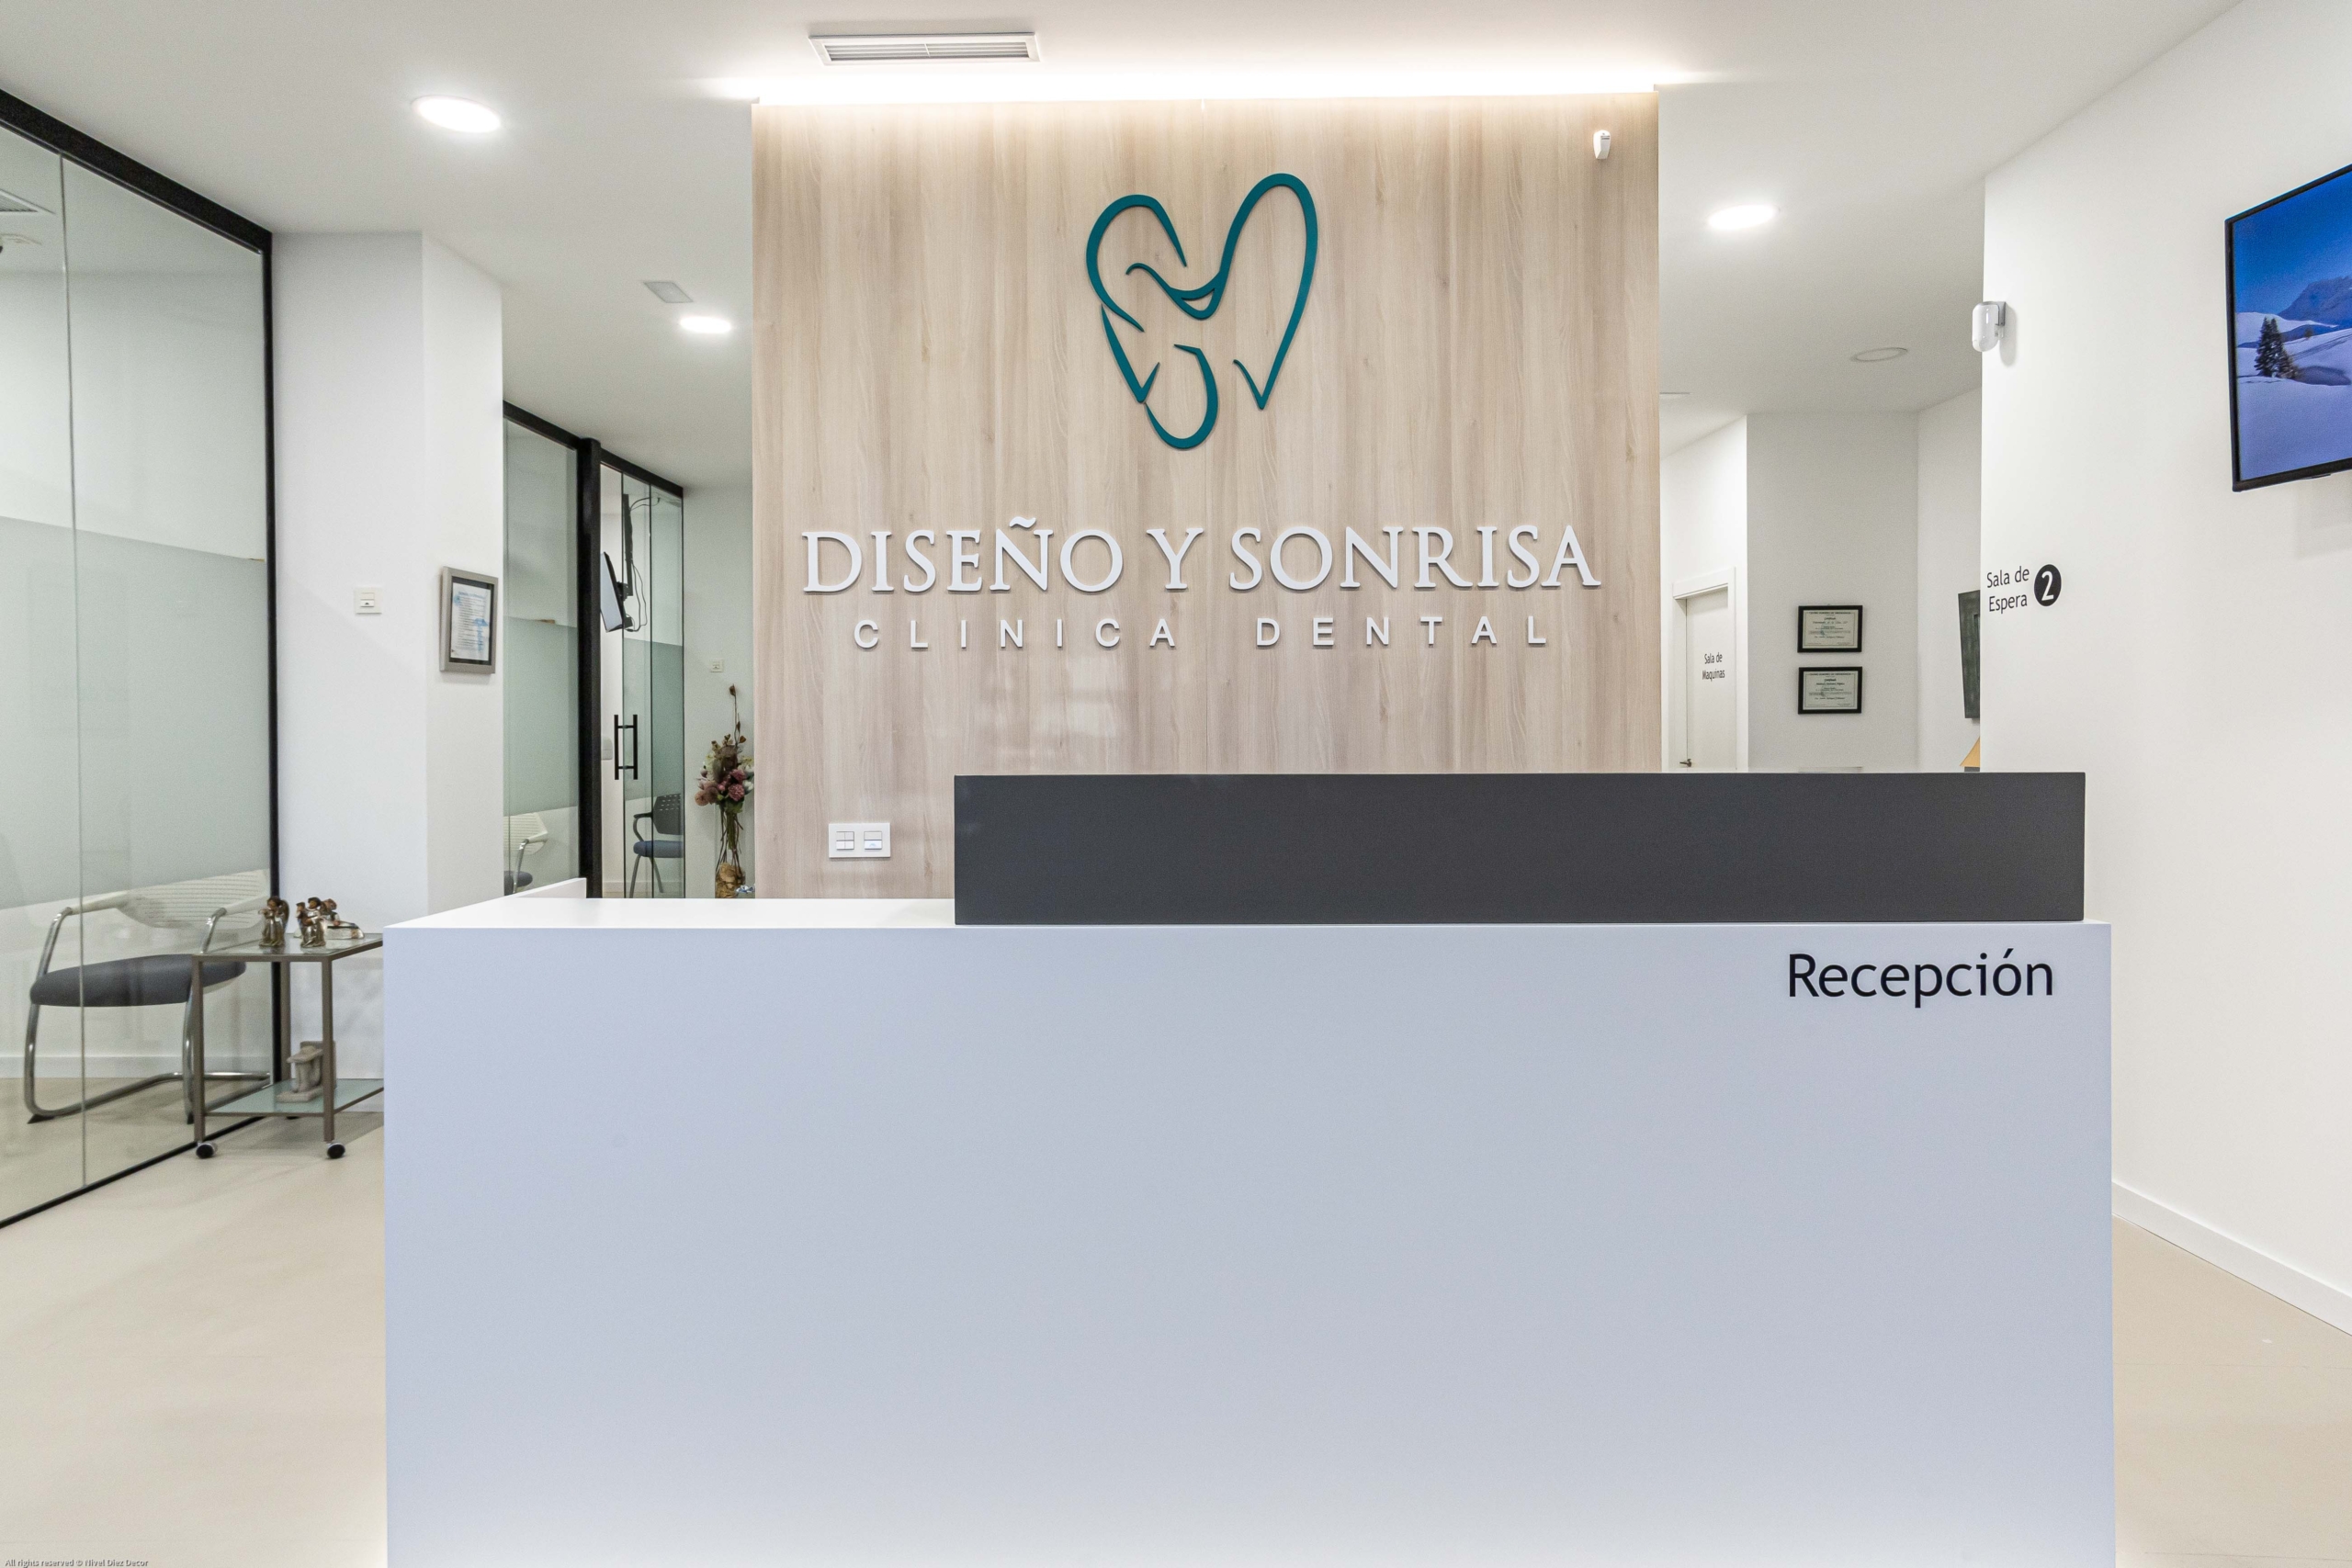 Sala de recepción con nombre ¨ Diseño y sonrisa¨ en izquierda despacho y box 1, con puertas de cristal